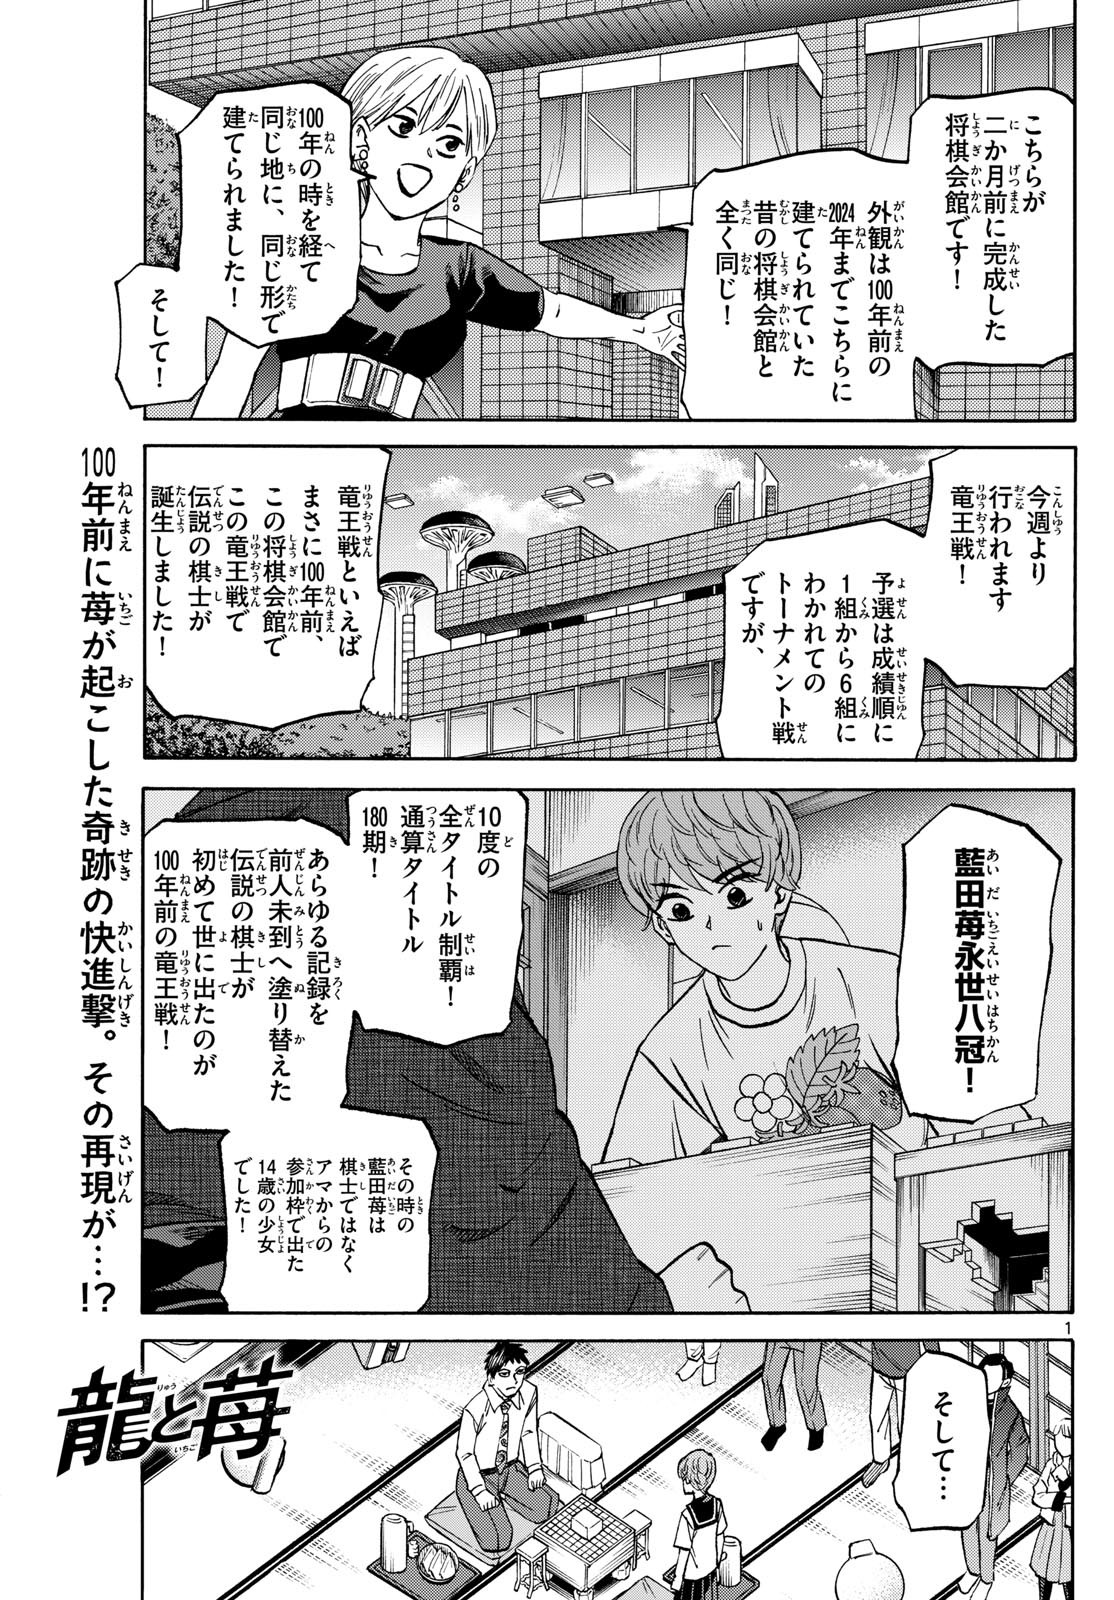 Ryu-to-Ichigo - Chapter 189 - Page 1